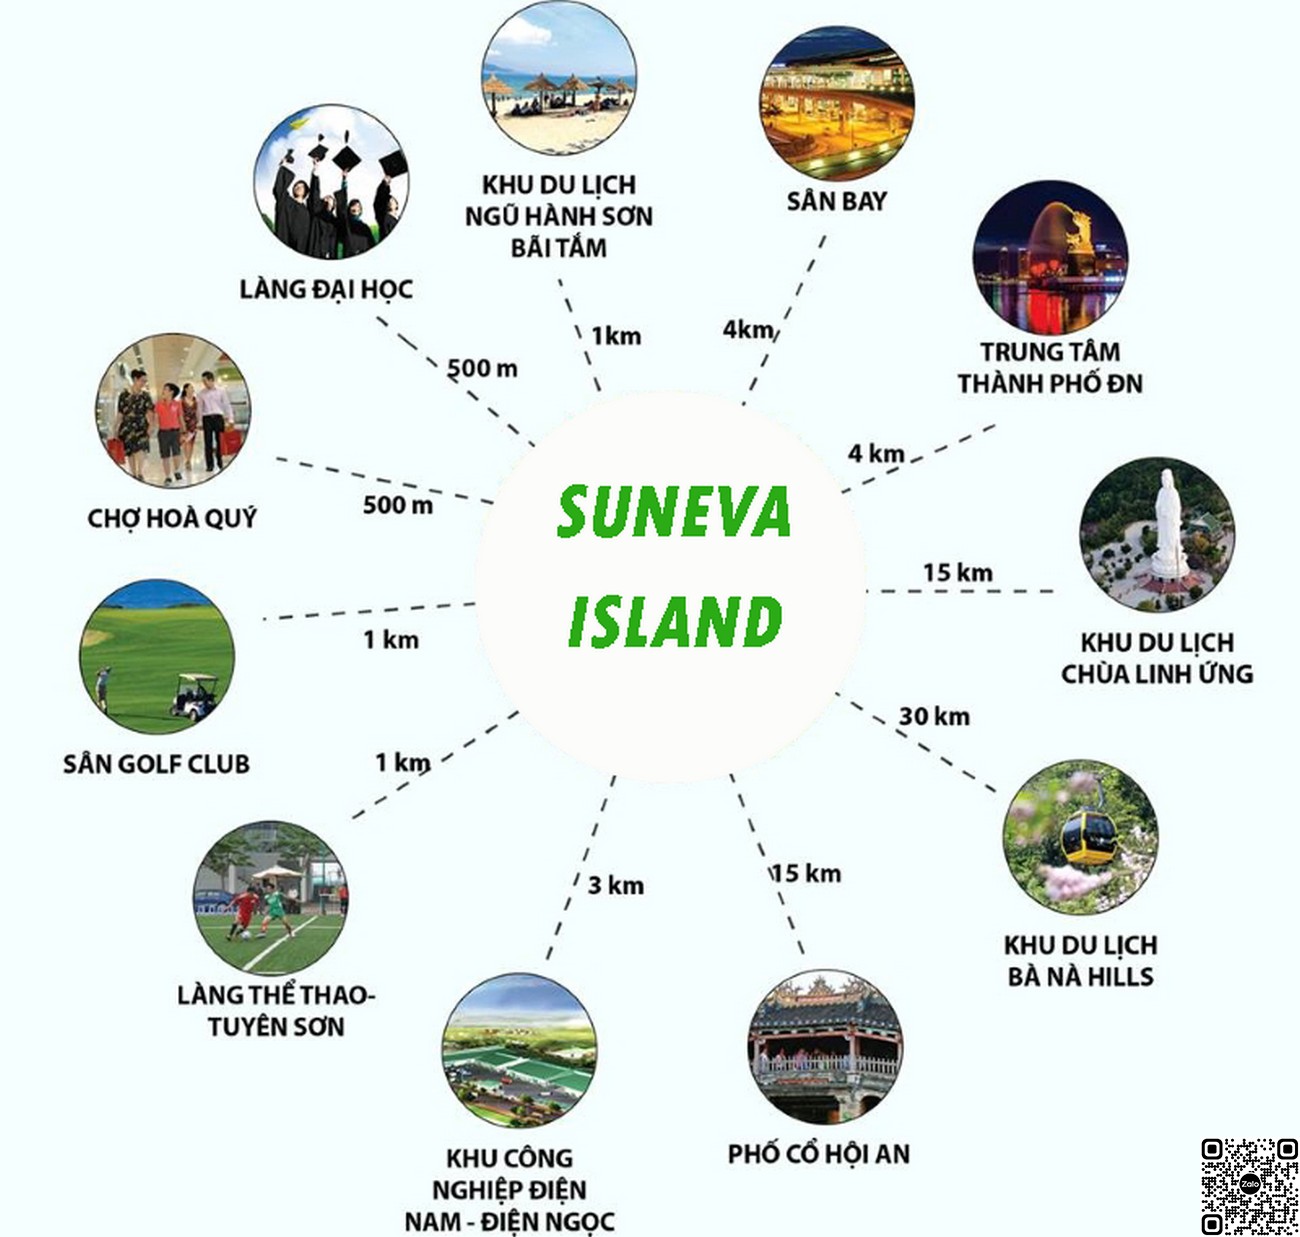 Tiện ích ngoại khu dự án Sunneva Island Đà Nẵng